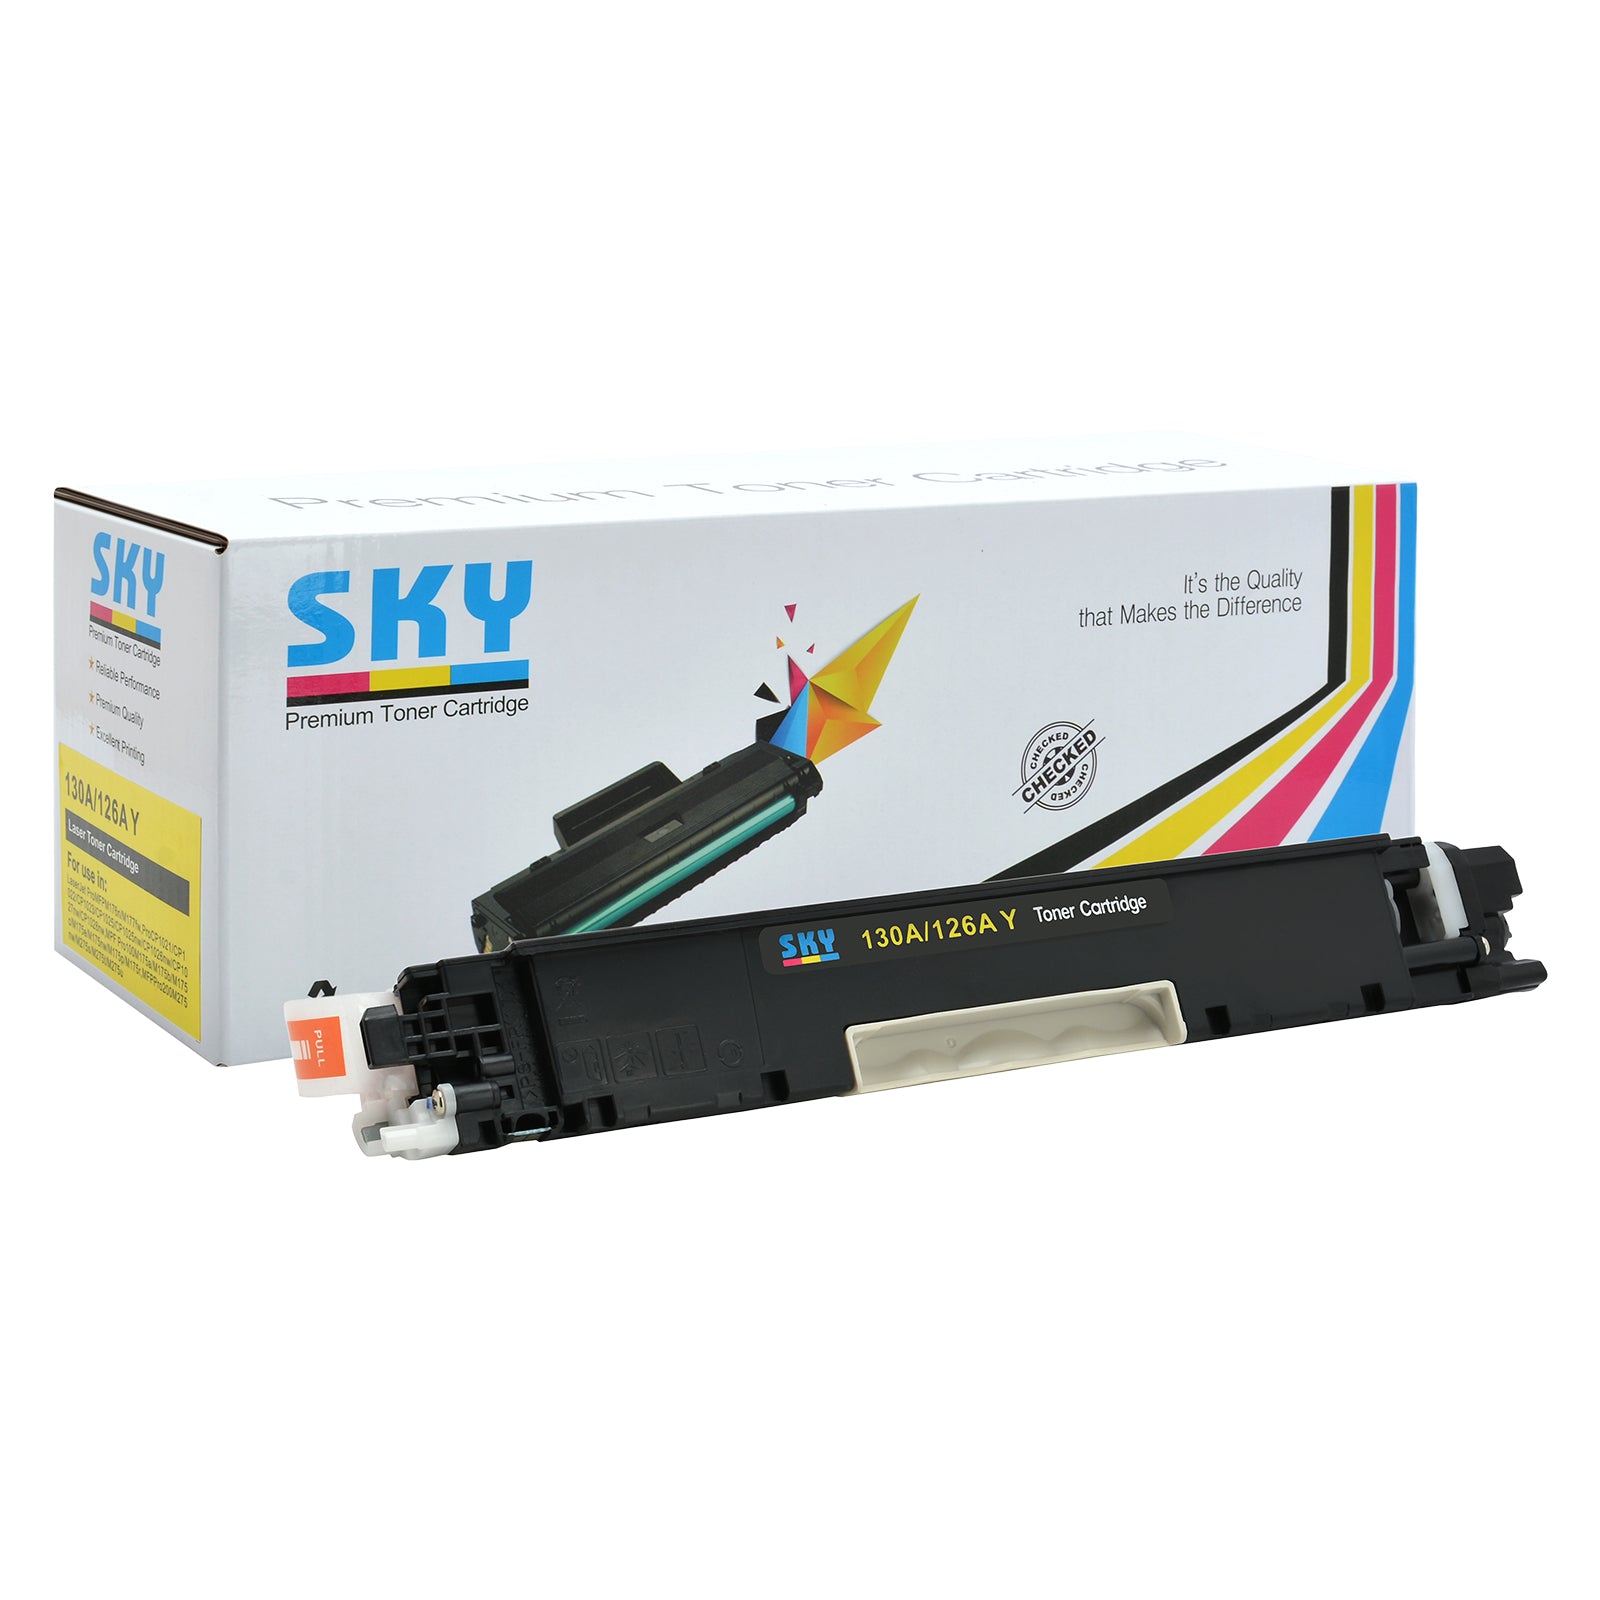 SKY 130A Compatible Toner Cartridges for HP Colour LaserJet Pro MFP M176/MFP M177